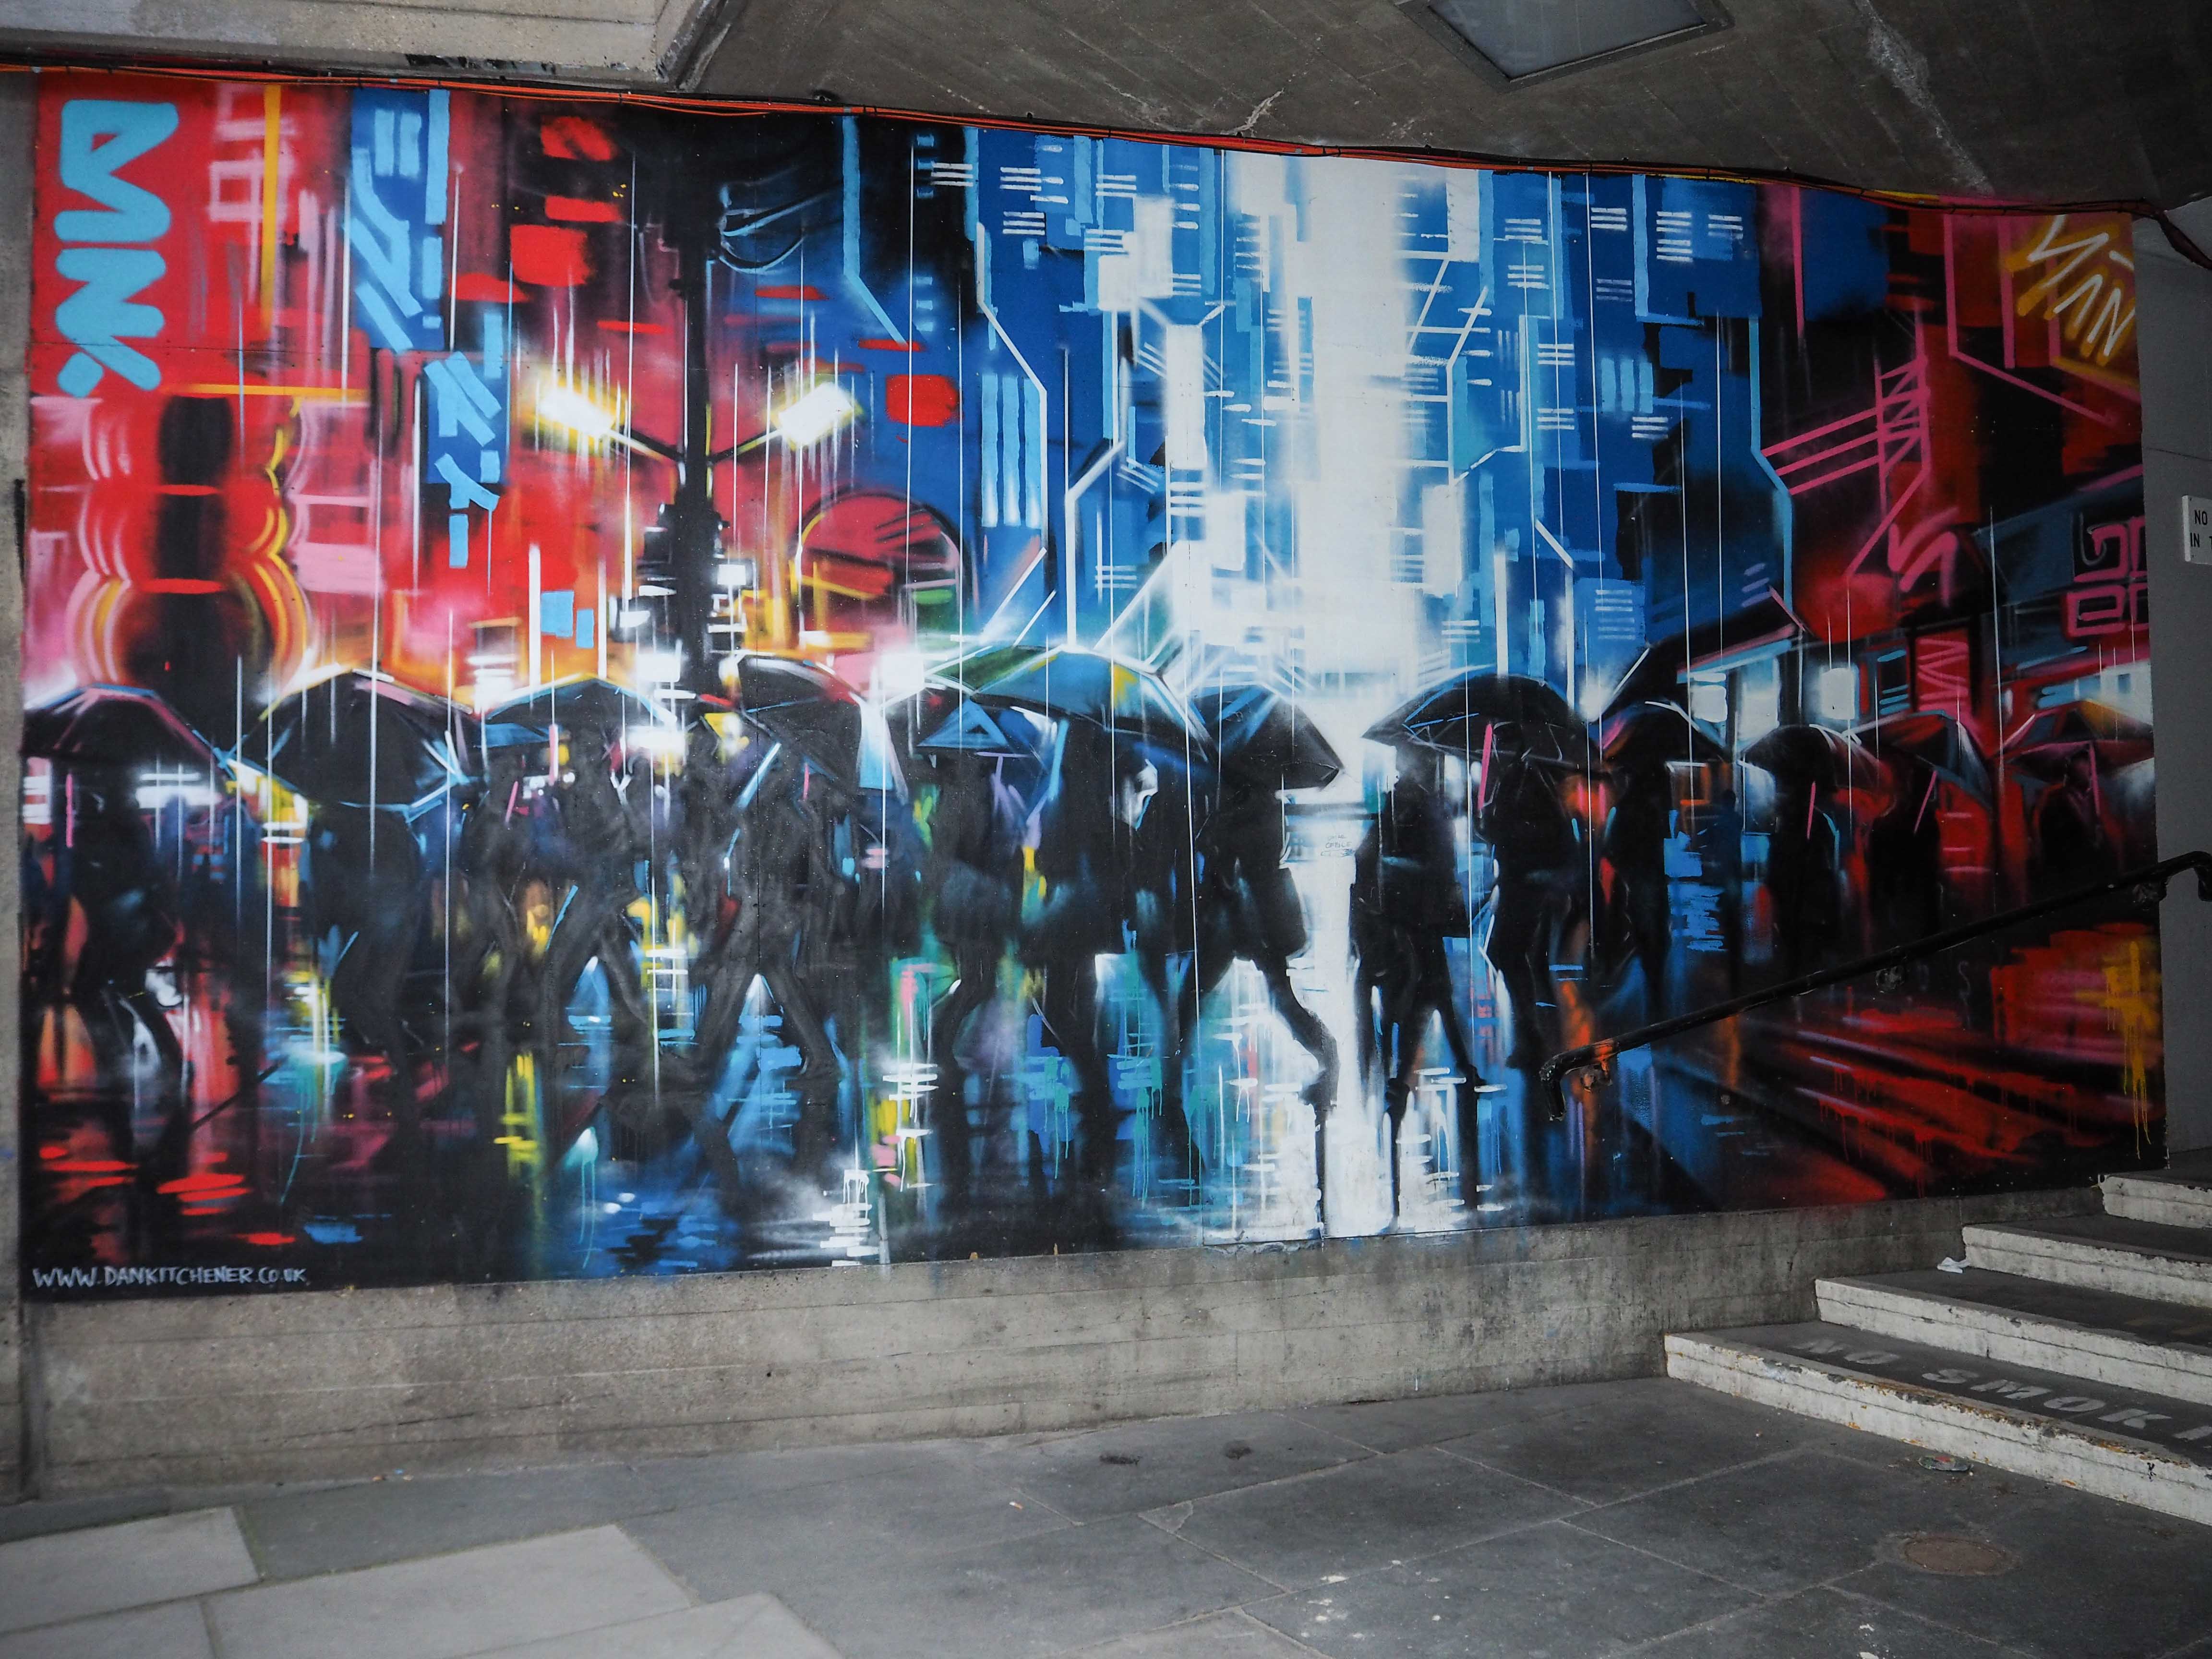 Mural von Dank dass Menschen im Regen in einer Stadt darstellt